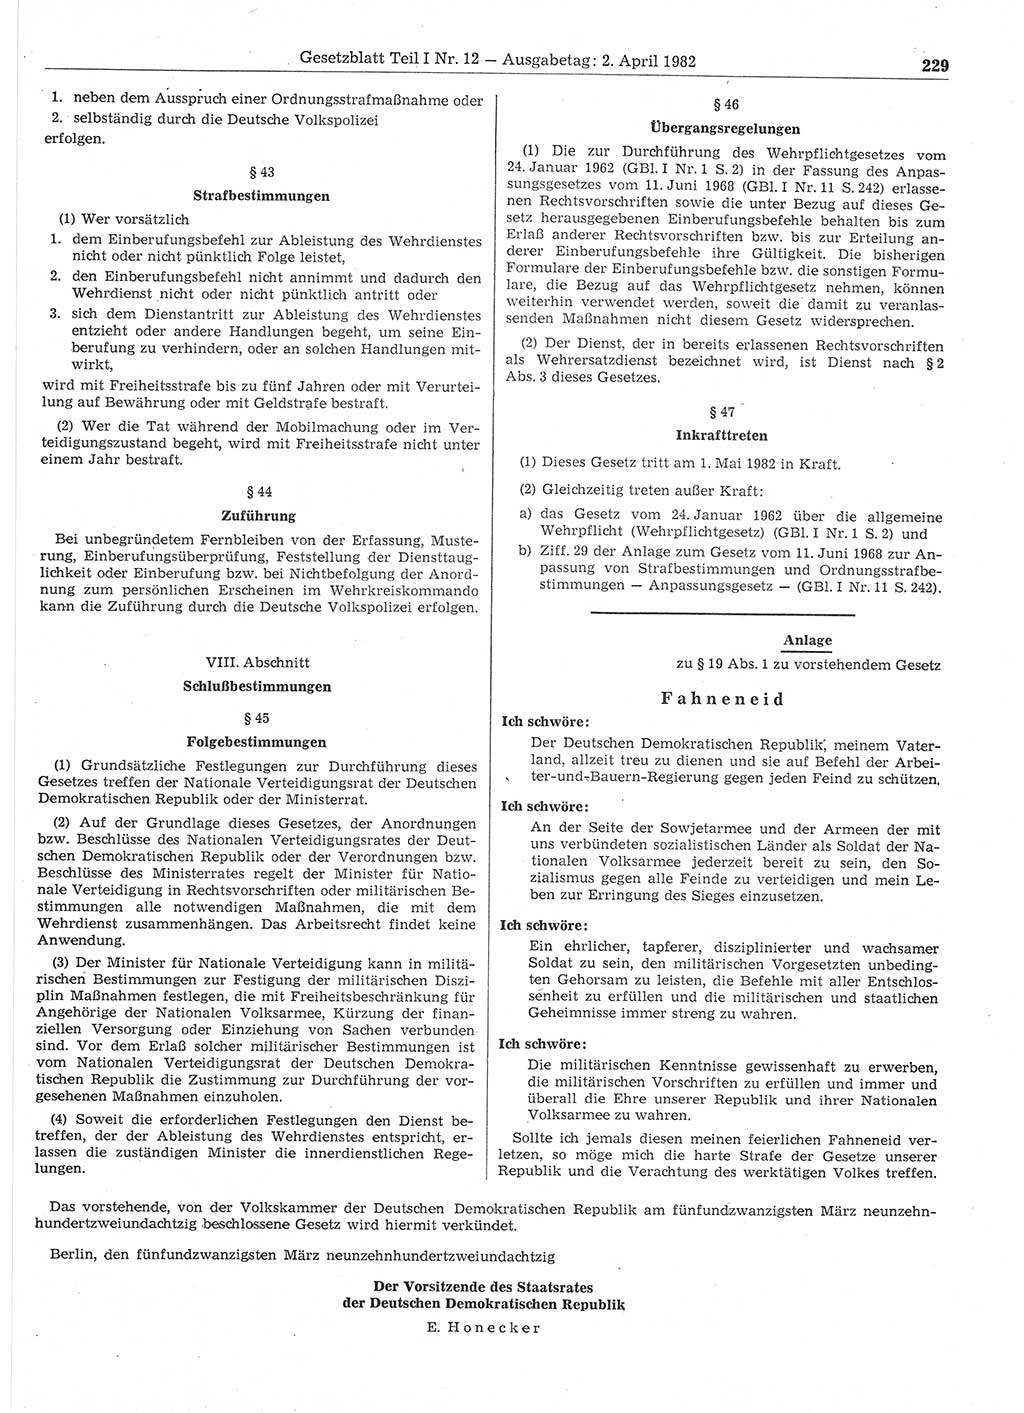 Gesetzblatt (GBl.) der Deutschen Demokratischen Republik (DDR) Teil Ⅰ 1982, Seite 229 (GBl. DDR Ⅰ 1982, S. 229)